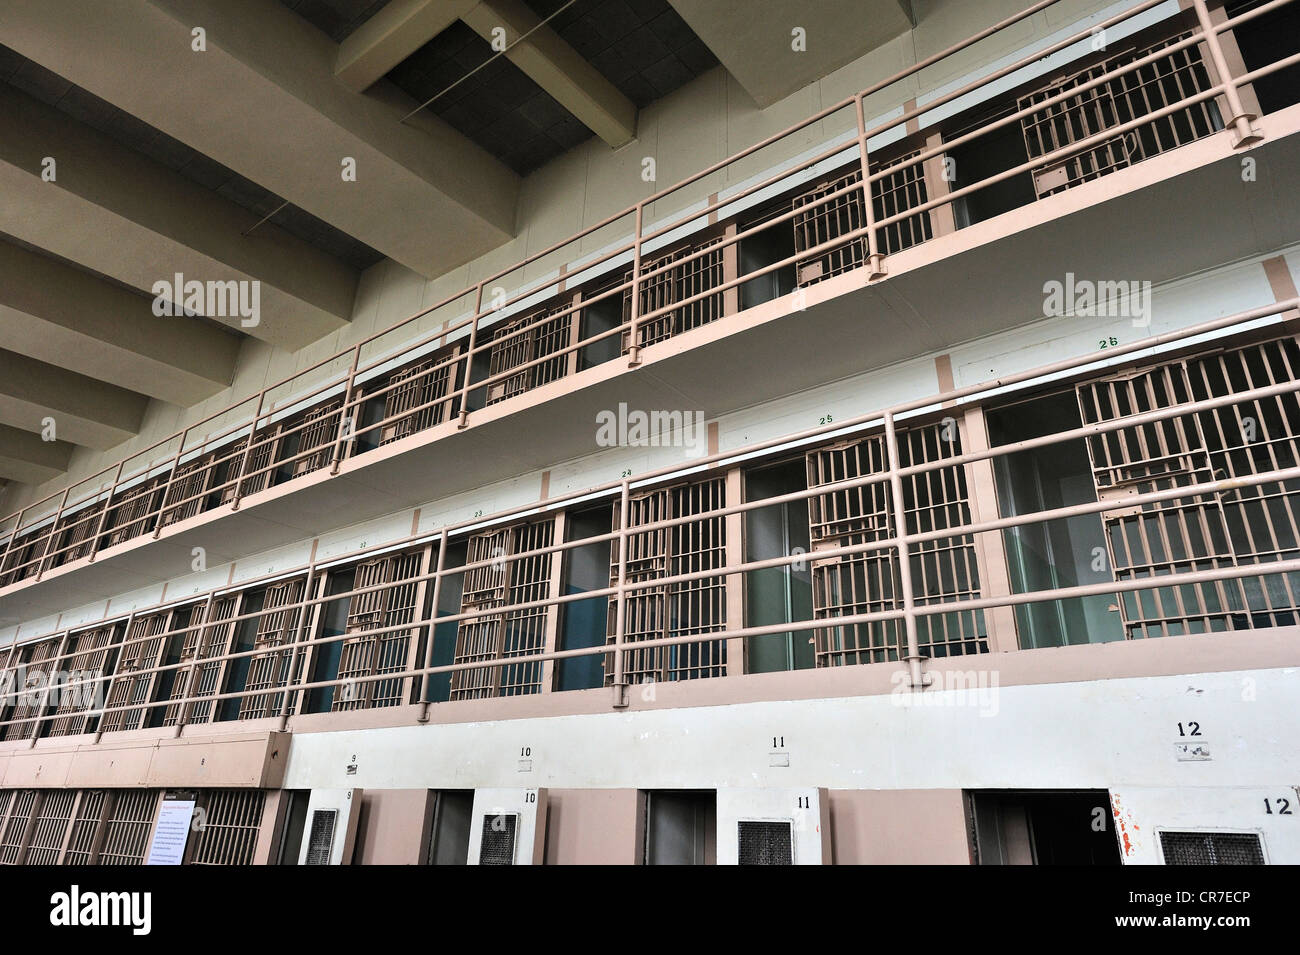 Blocco di cella D in prigione per prigionieri speciali come Al Capone, Isola di Alcatraz, CALIFORNIA, STATI UNITI D'AMERICA Foto Stock